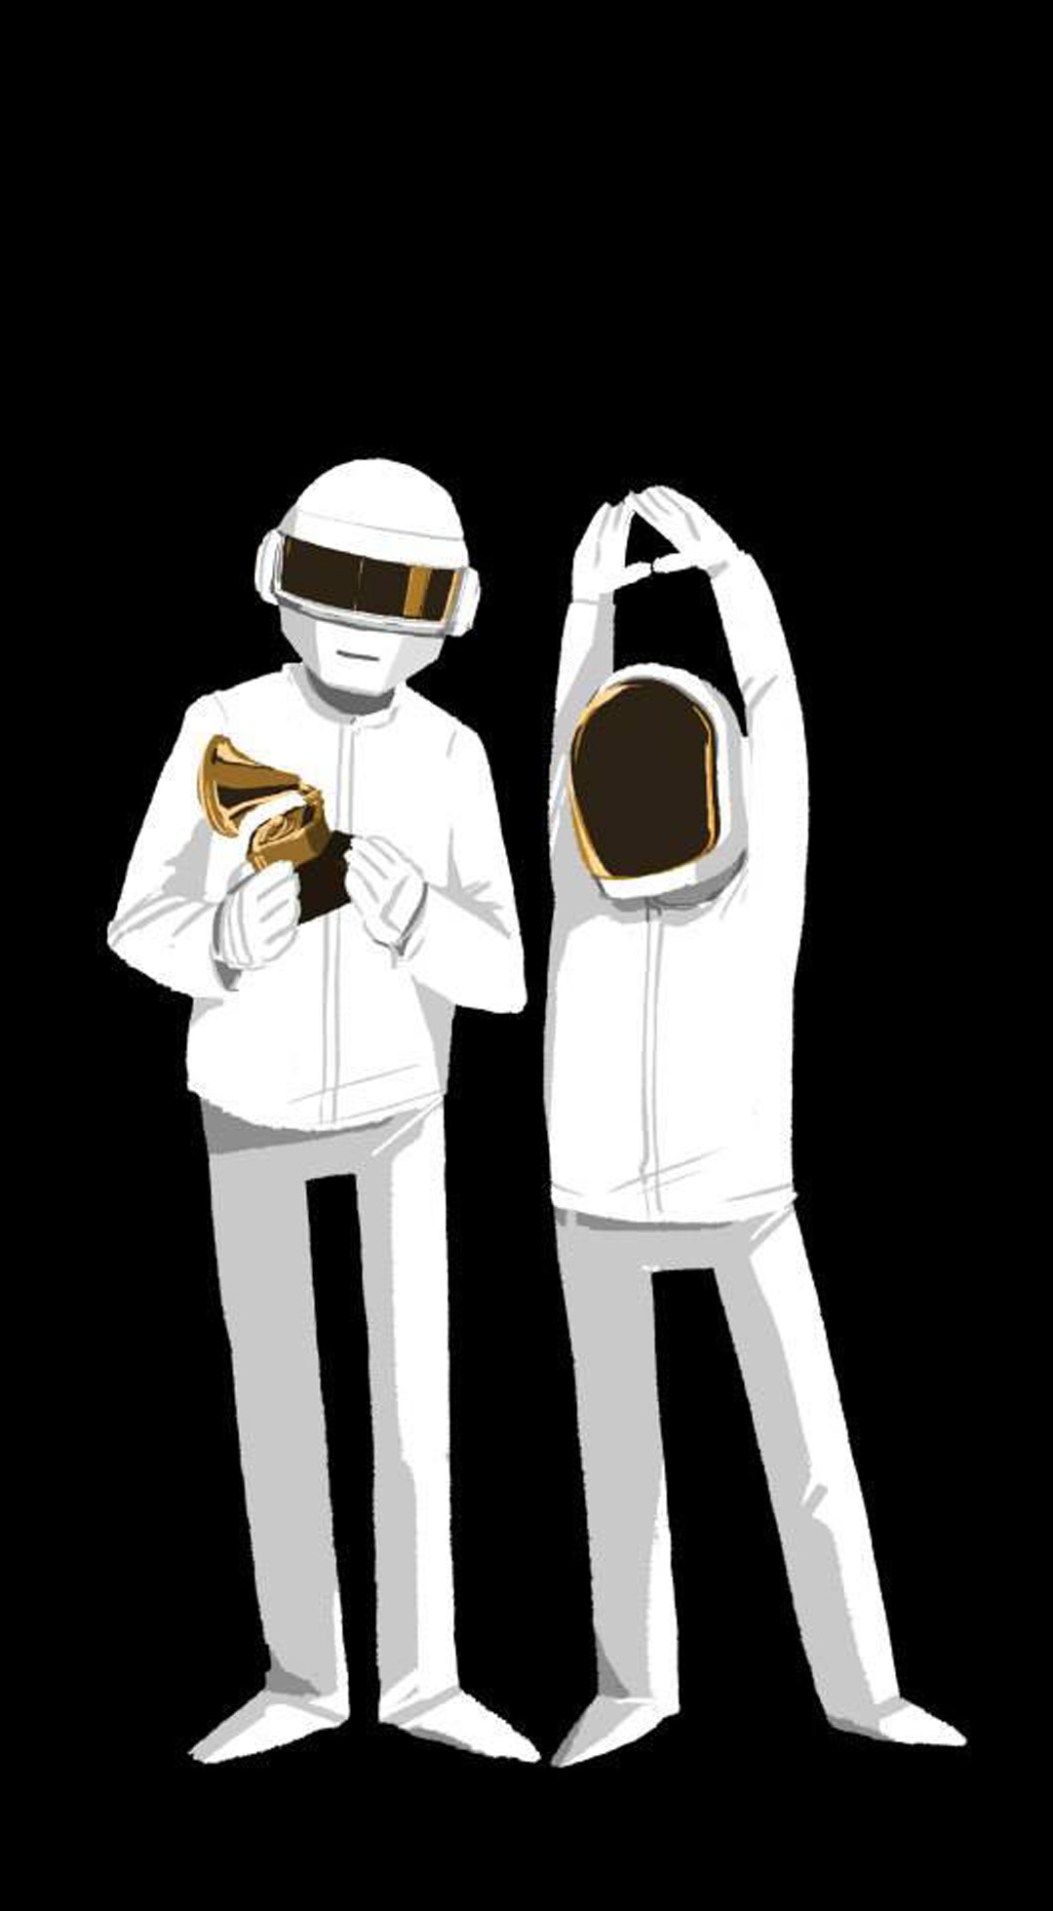 2D Daft Punk Retro Digital illustration